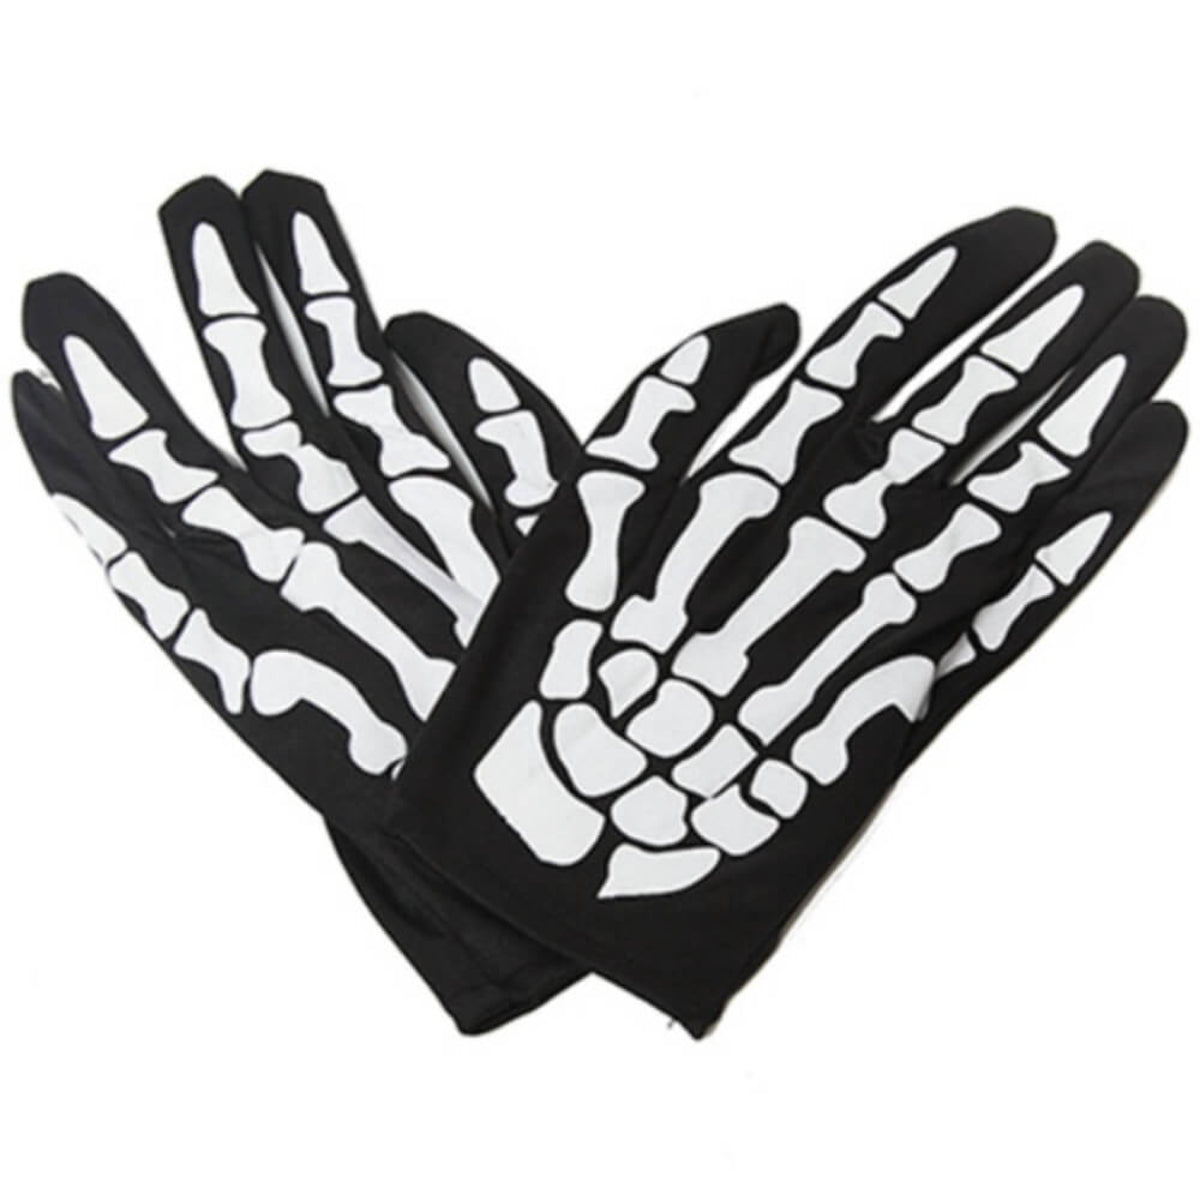 Ro Rox Skeleton Short Gloves Full Finger Black and White Halloween Costume